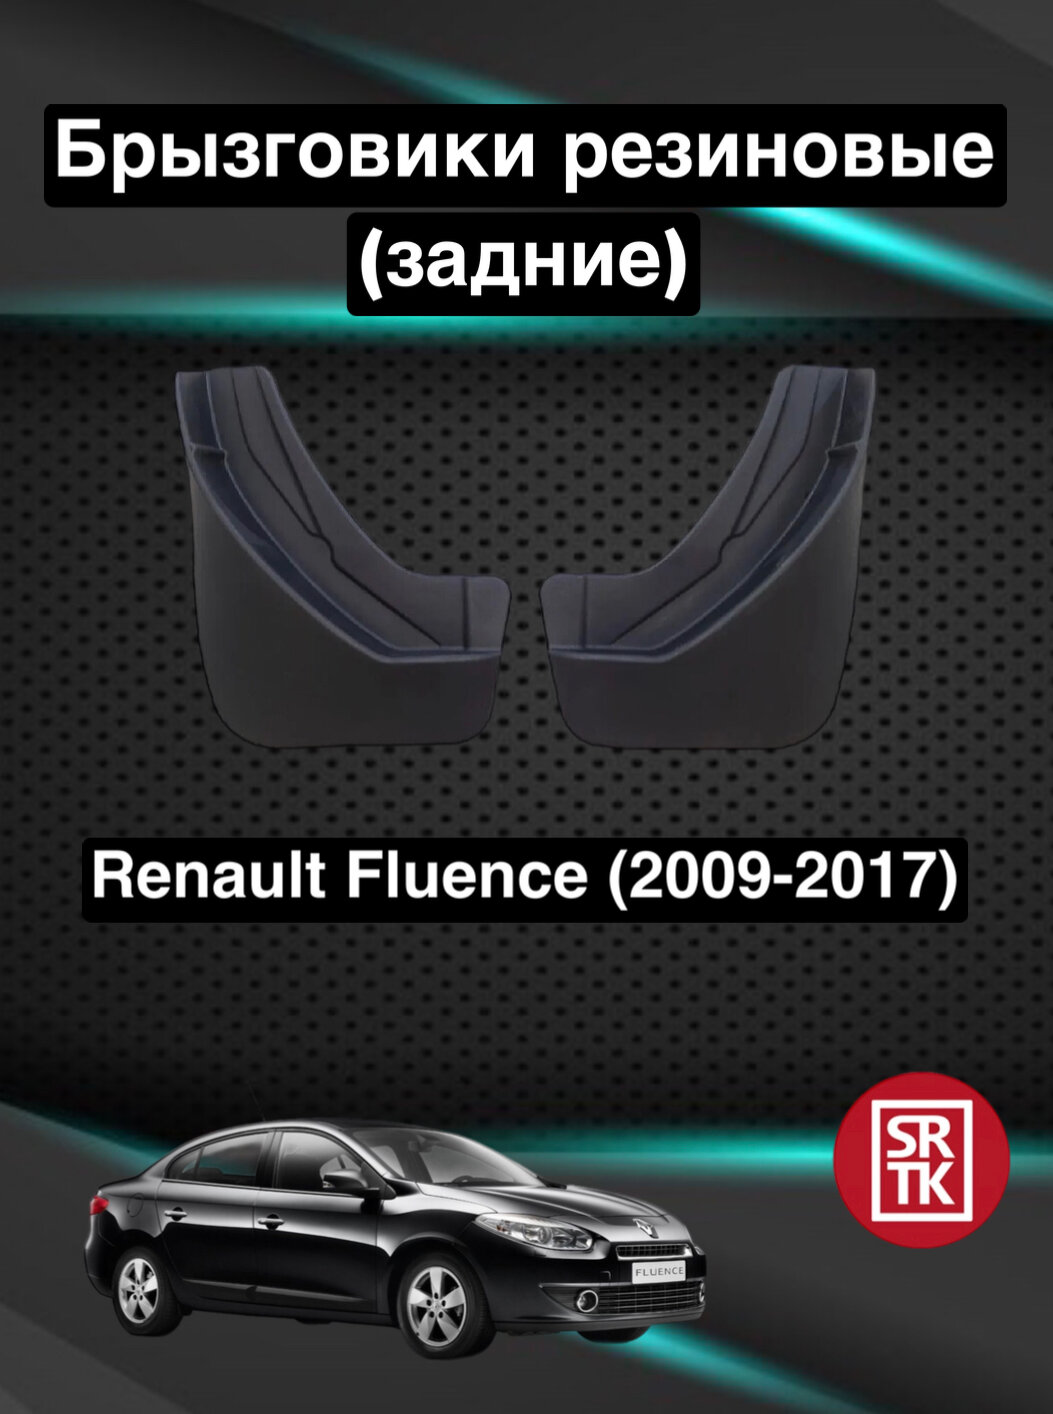 Брызговики резиновые для Renault Fluence (2009-2017)/Рено Флюенс (2009-2017) SRTK, задние